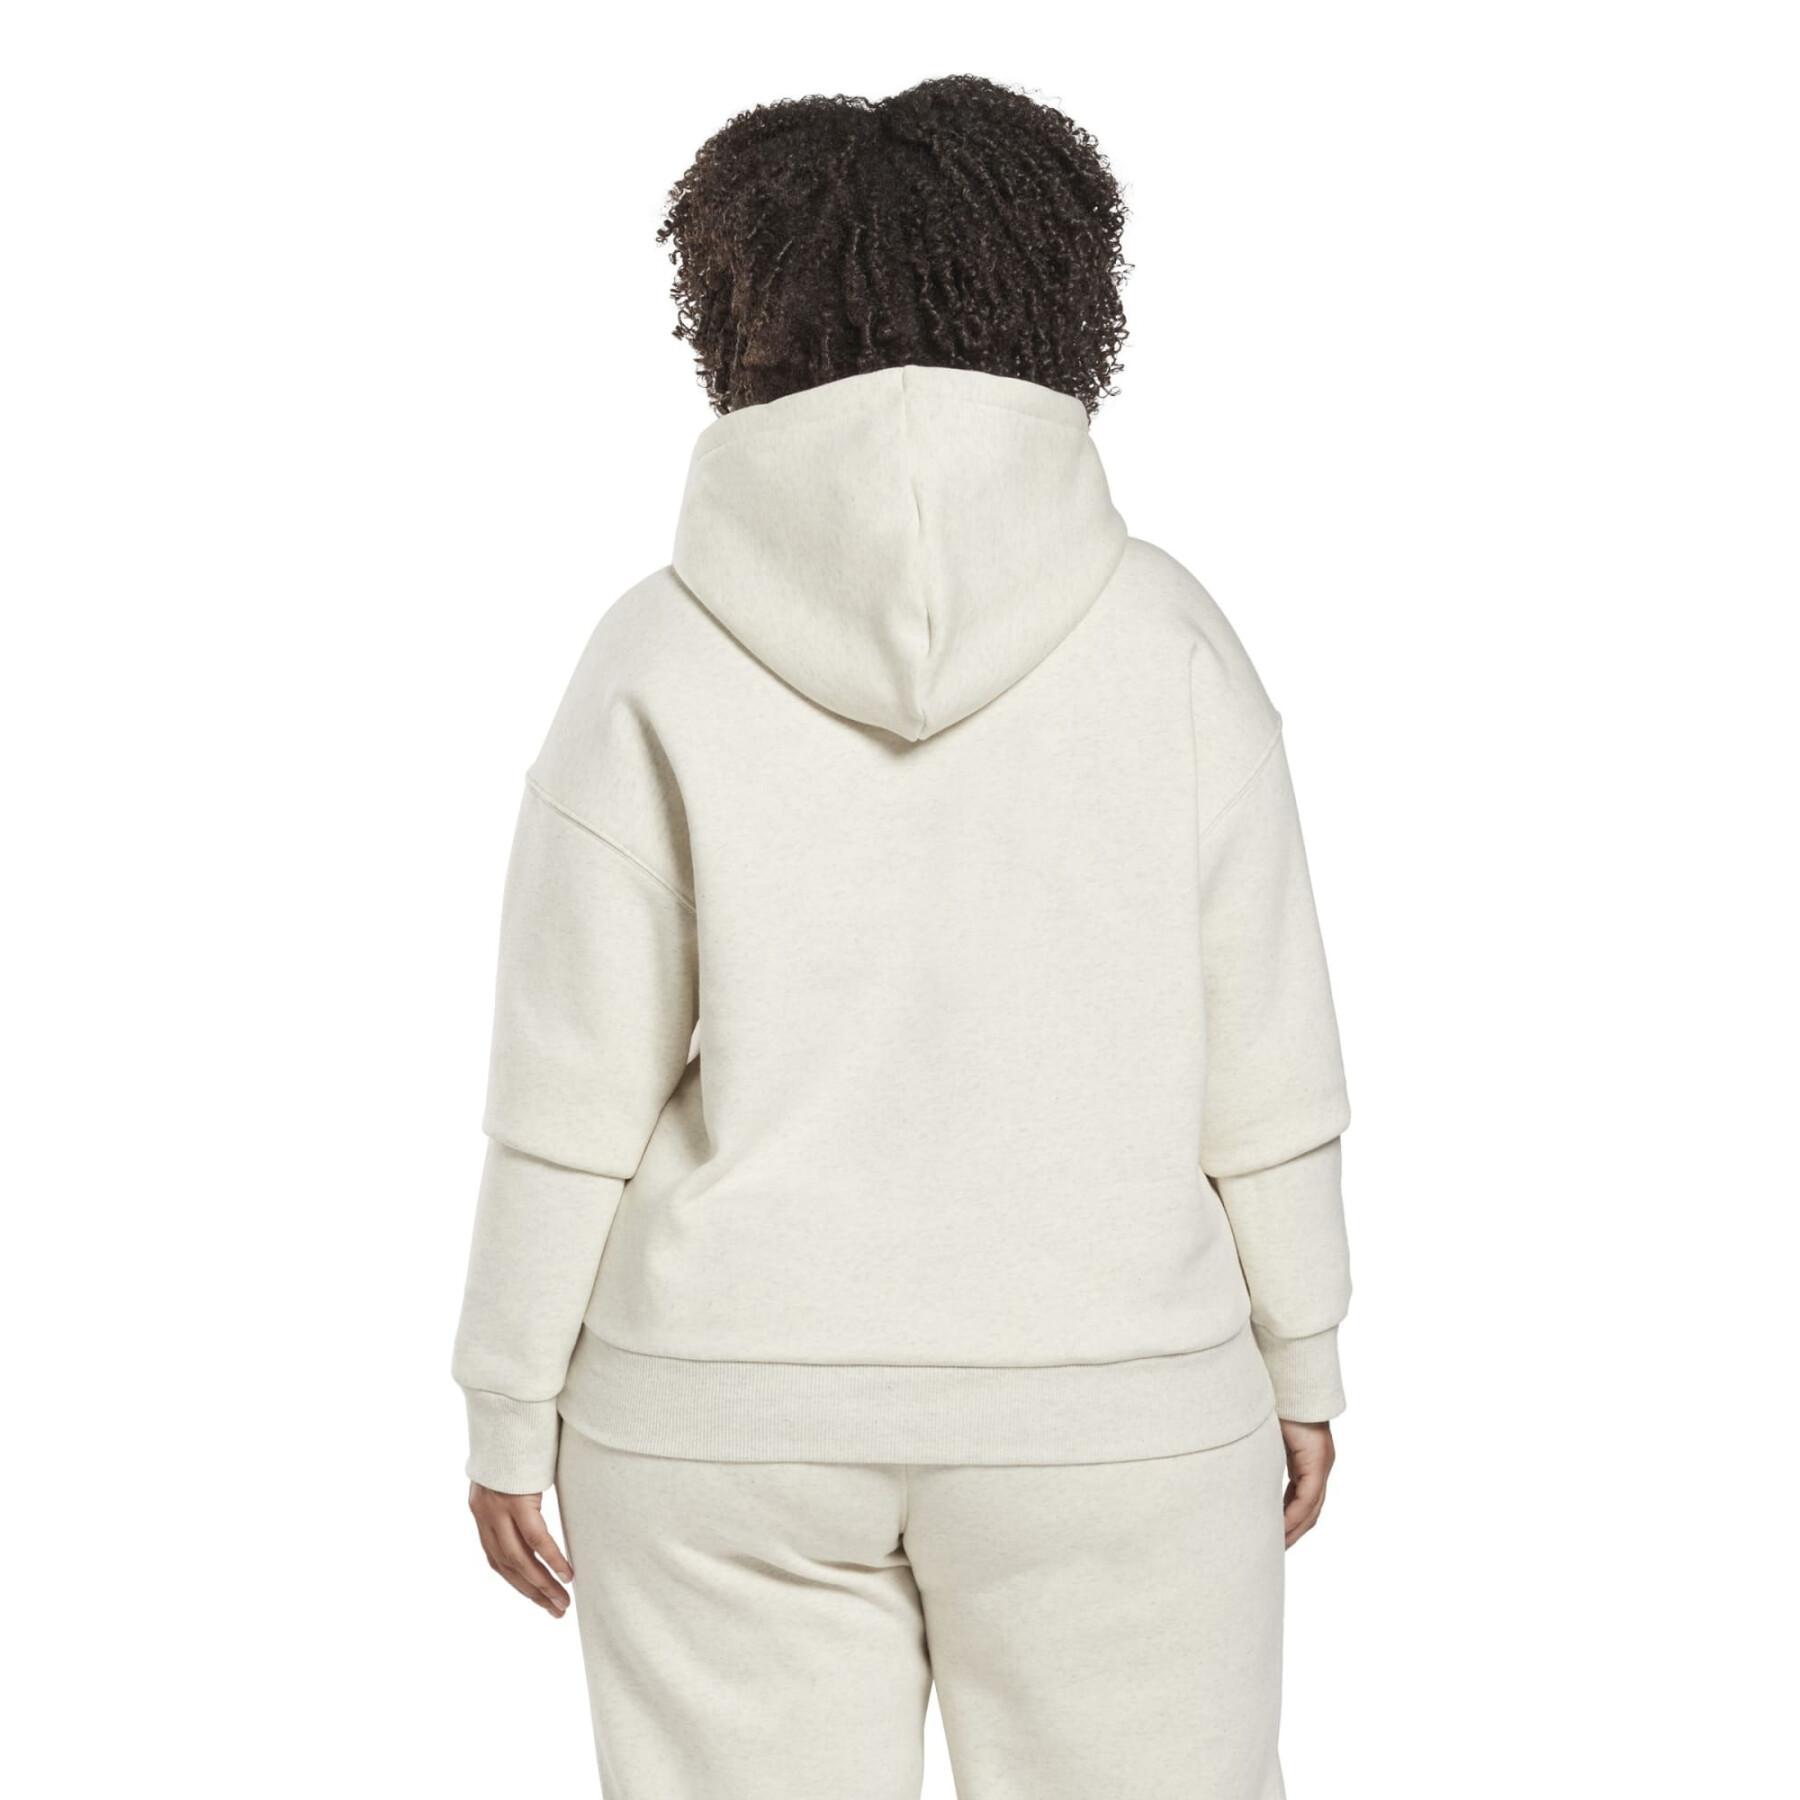 Sweatshirt à capuche polaire à logo femme Reebok Identity GT